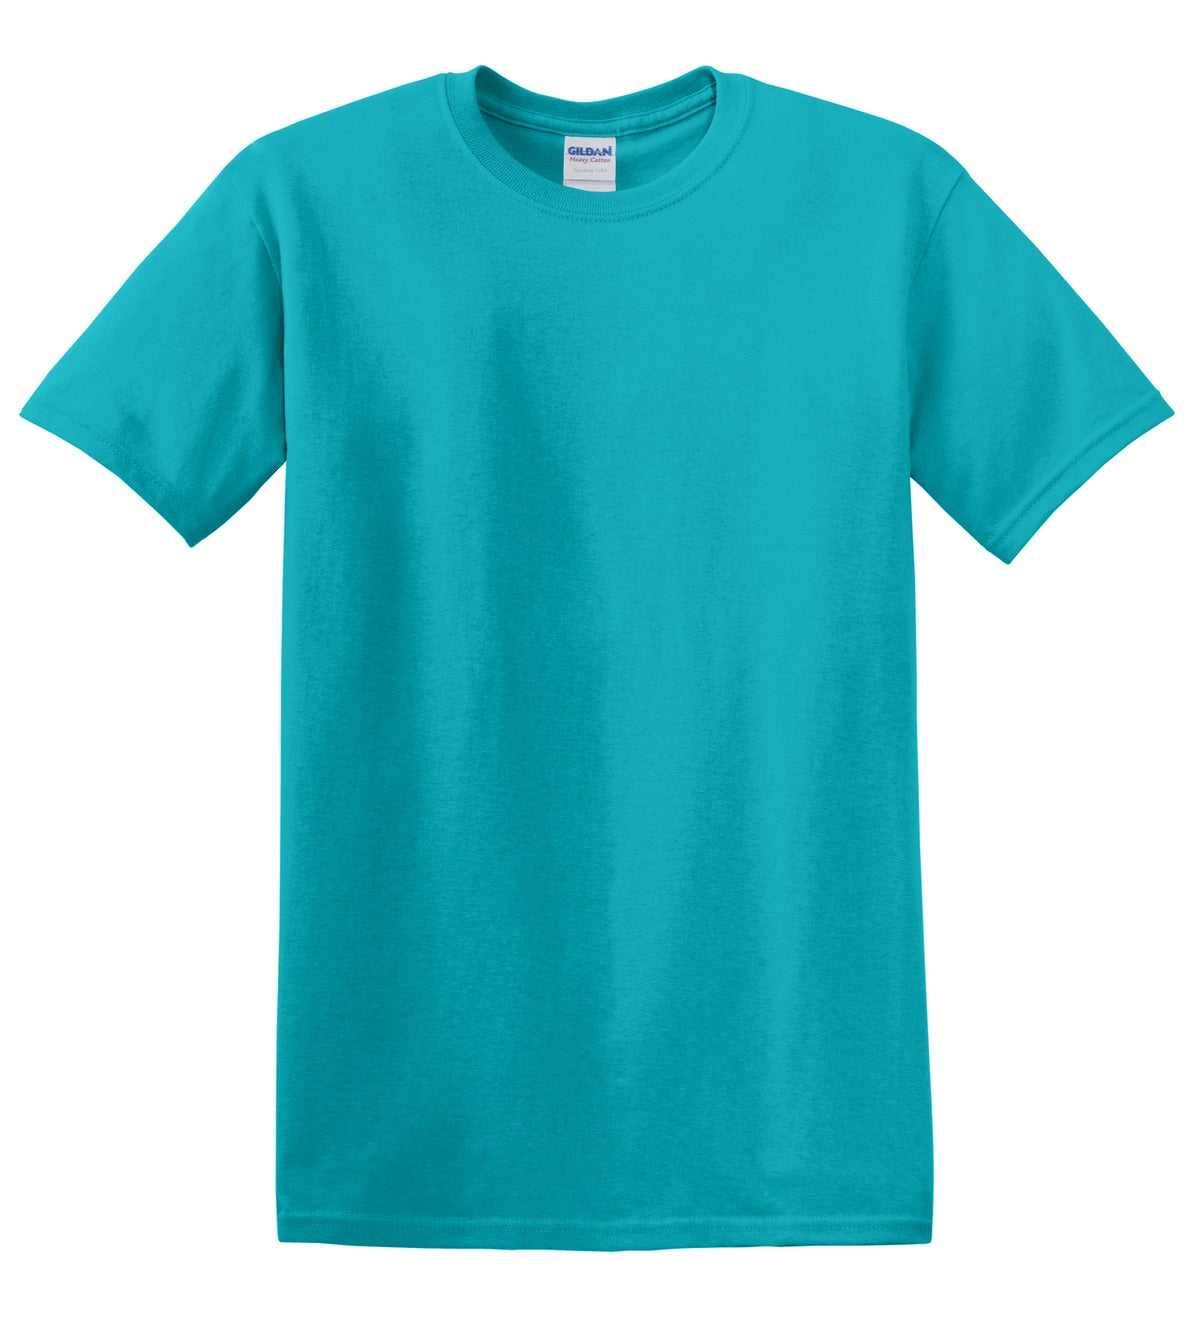 Gildan 5000 Heavy Cotton 100% Cotton T-Shirt - Tropical Blue - HIT a Double